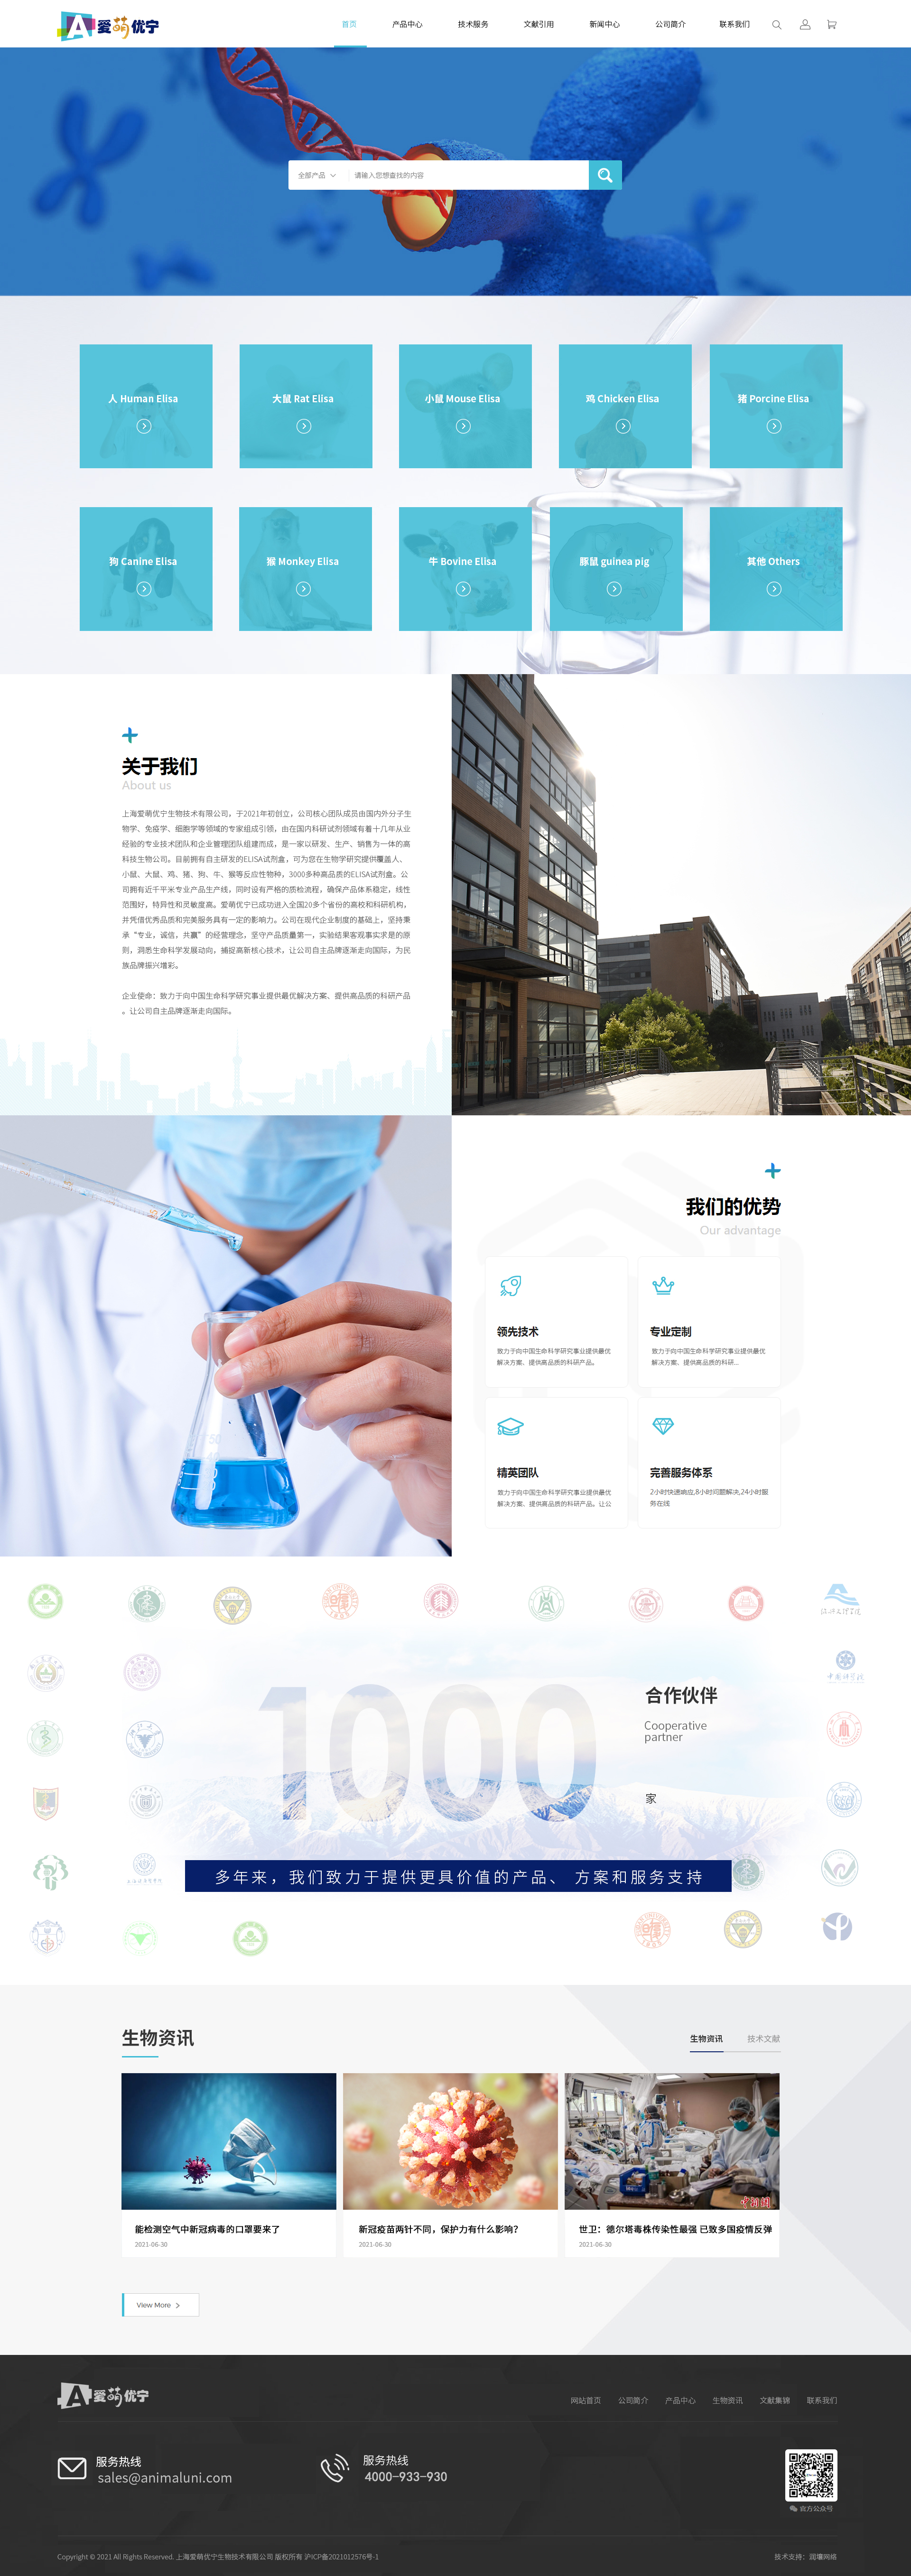 上海网站设计公司